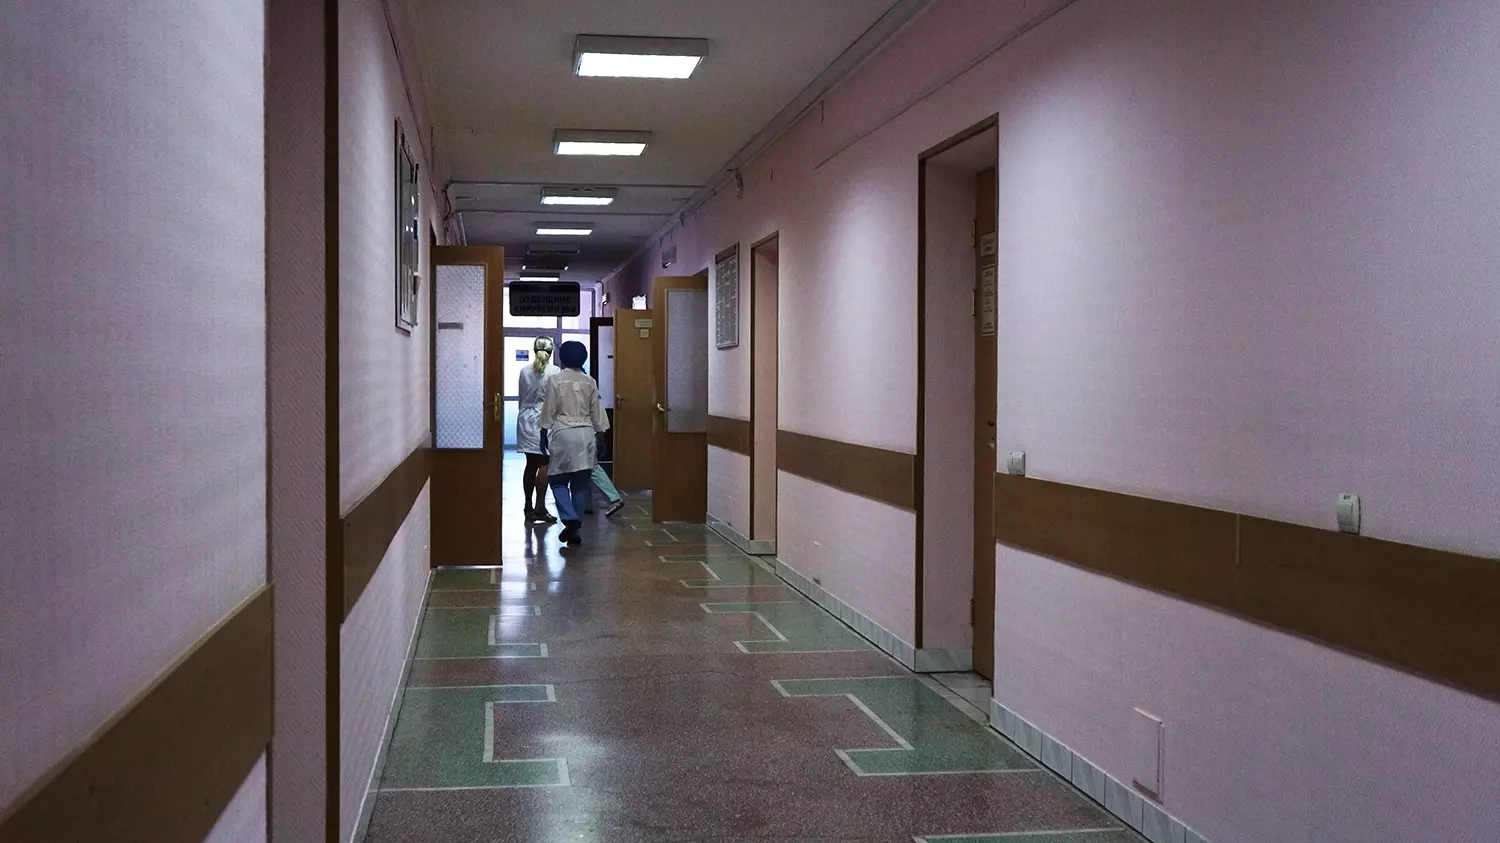 Родственница жены Янковского получила место в больнице Екатеринбурга после жалобы